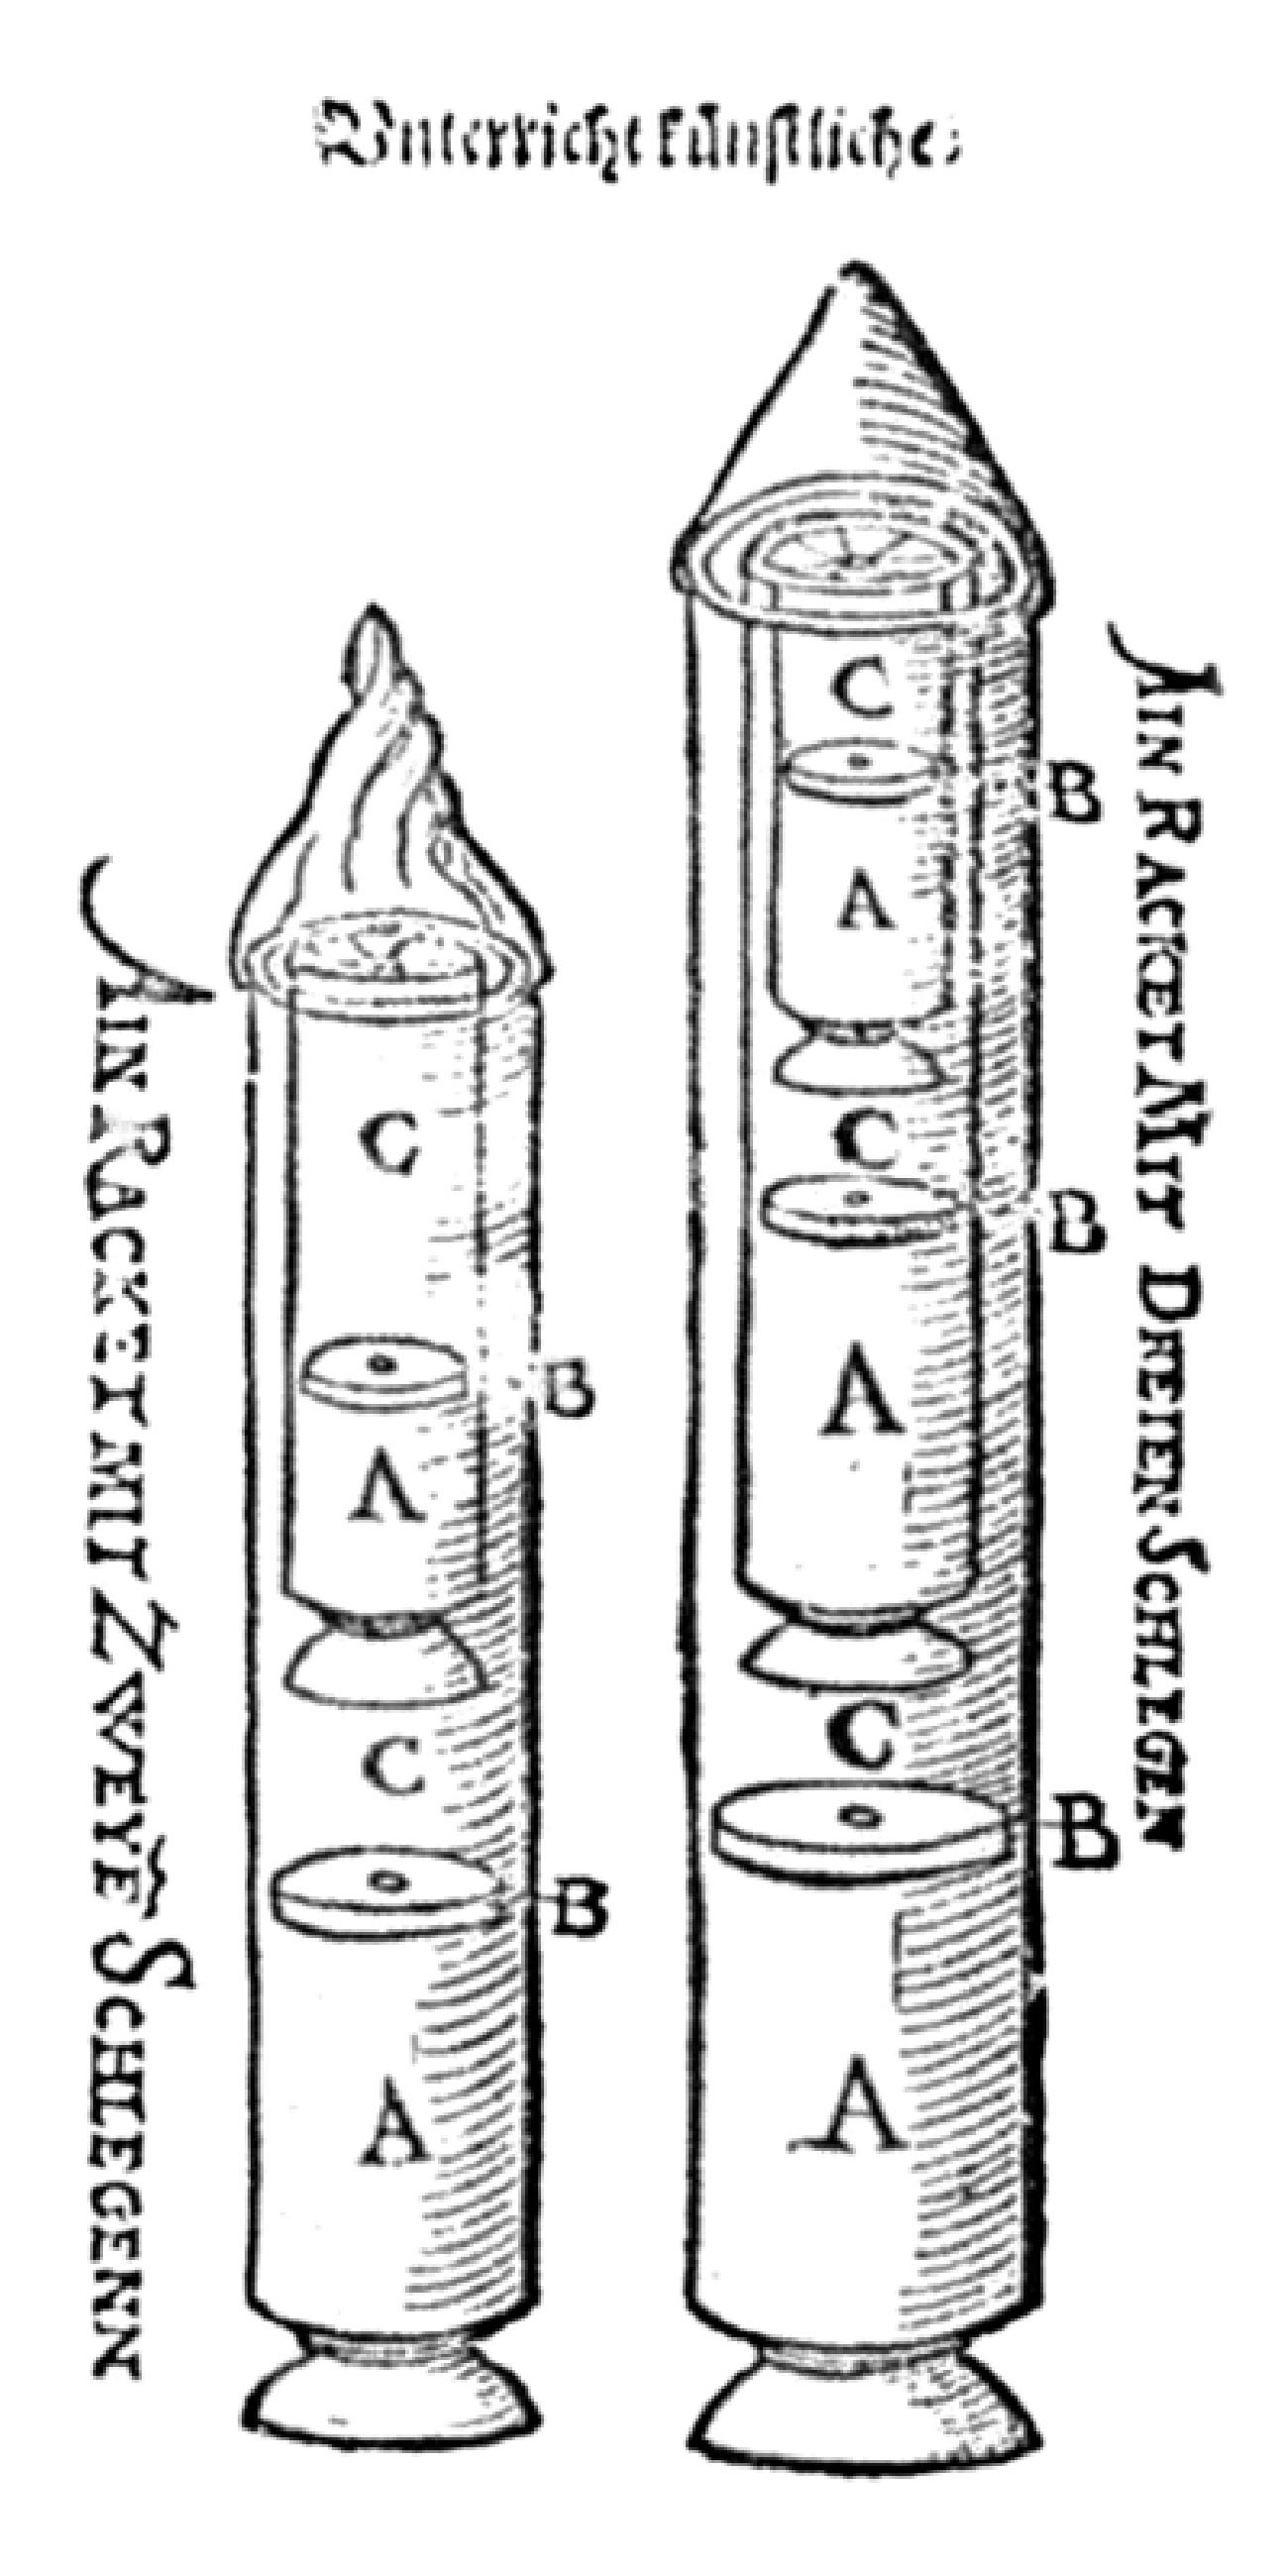 A prototype of rocket by Conrad Haas, 1529